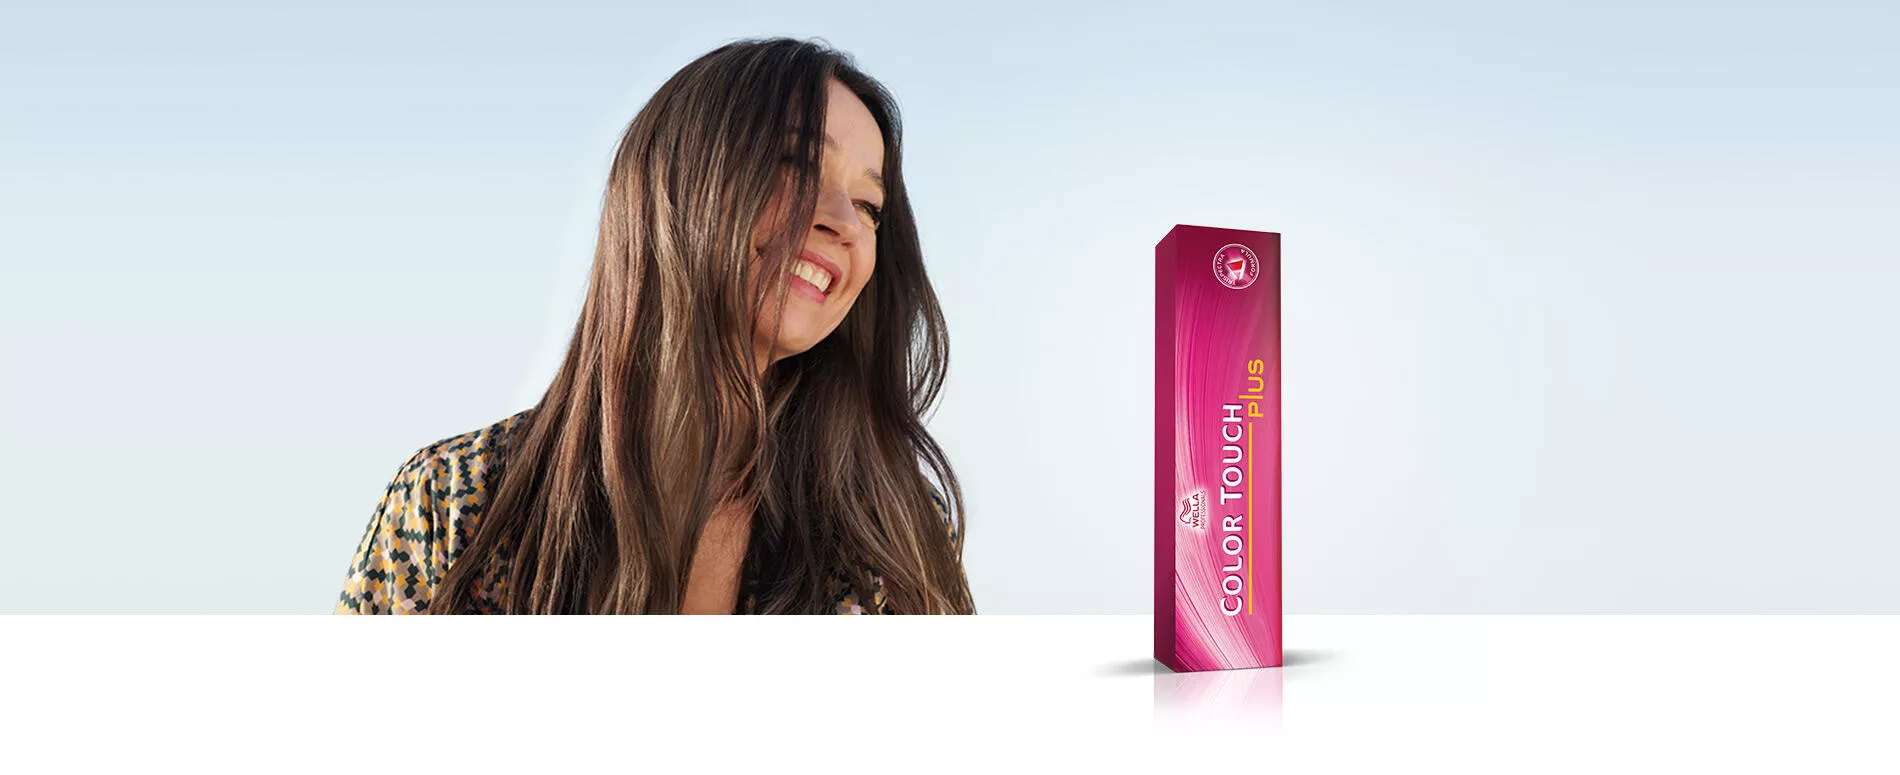 Foto di donna con capelli lunghi con colorazione castano luminoso con il prodotto Color Touch Wella Professionals